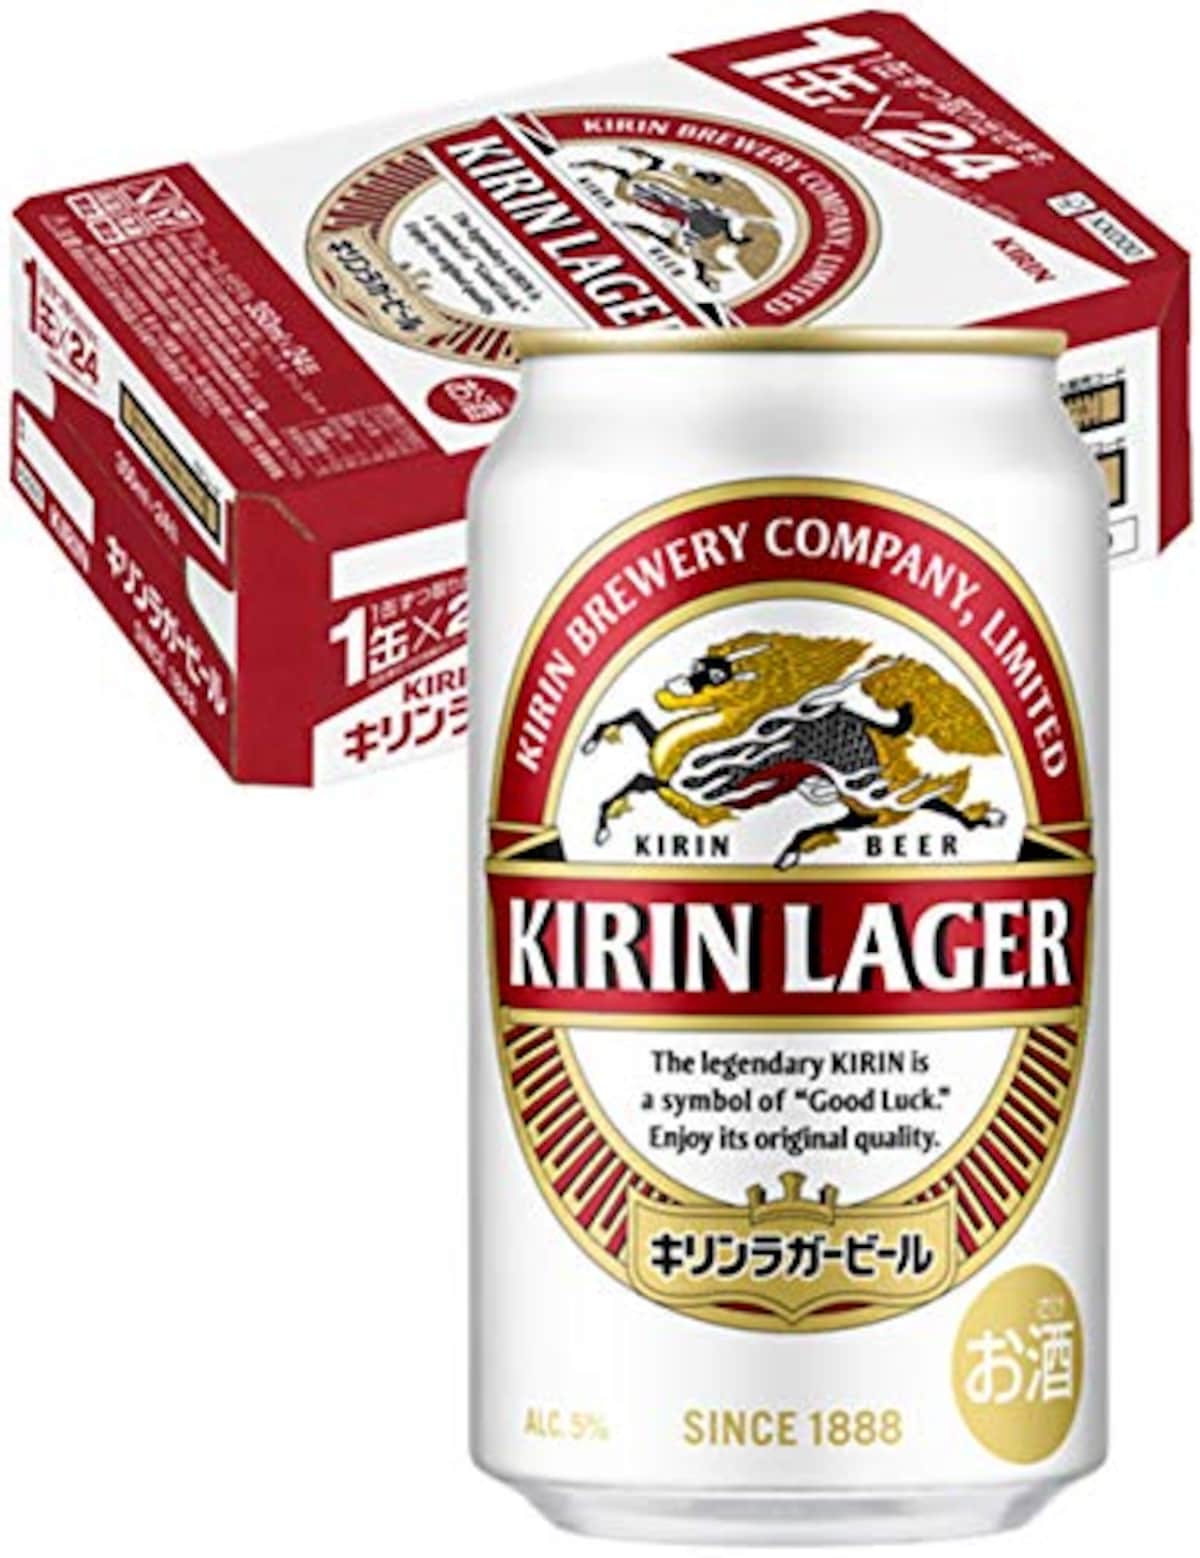 ラガービール 350ml×24本